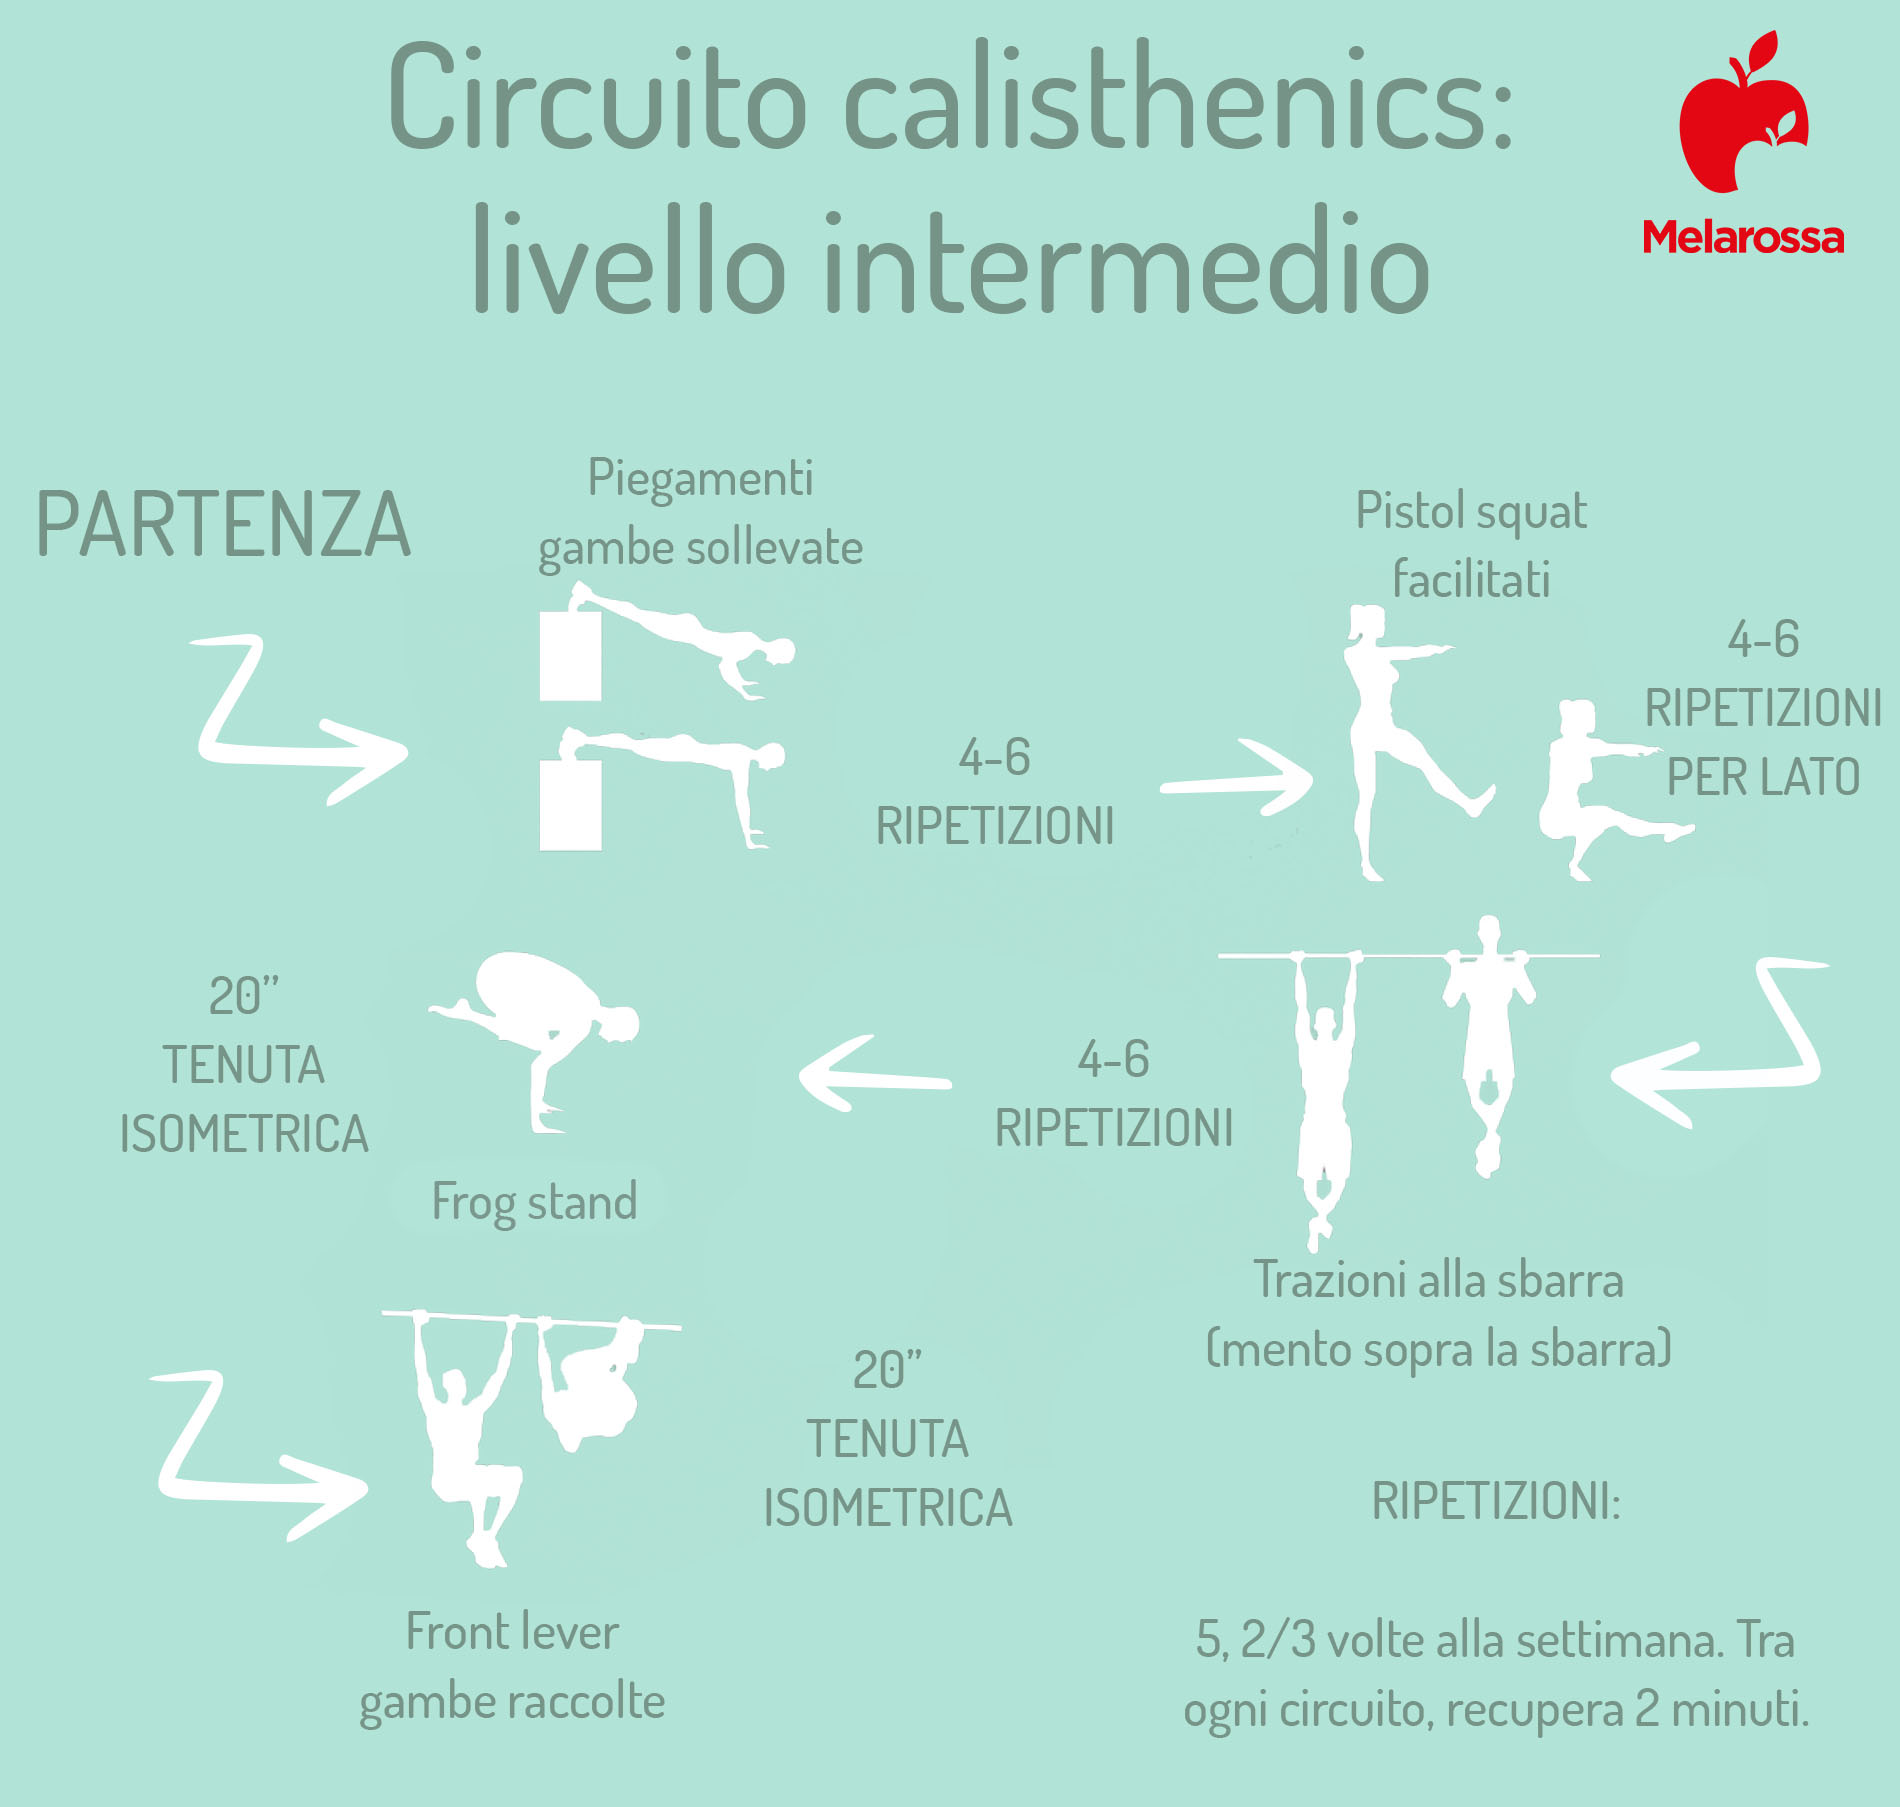 calisthenics: circuito di allenamento- livello intermedio 